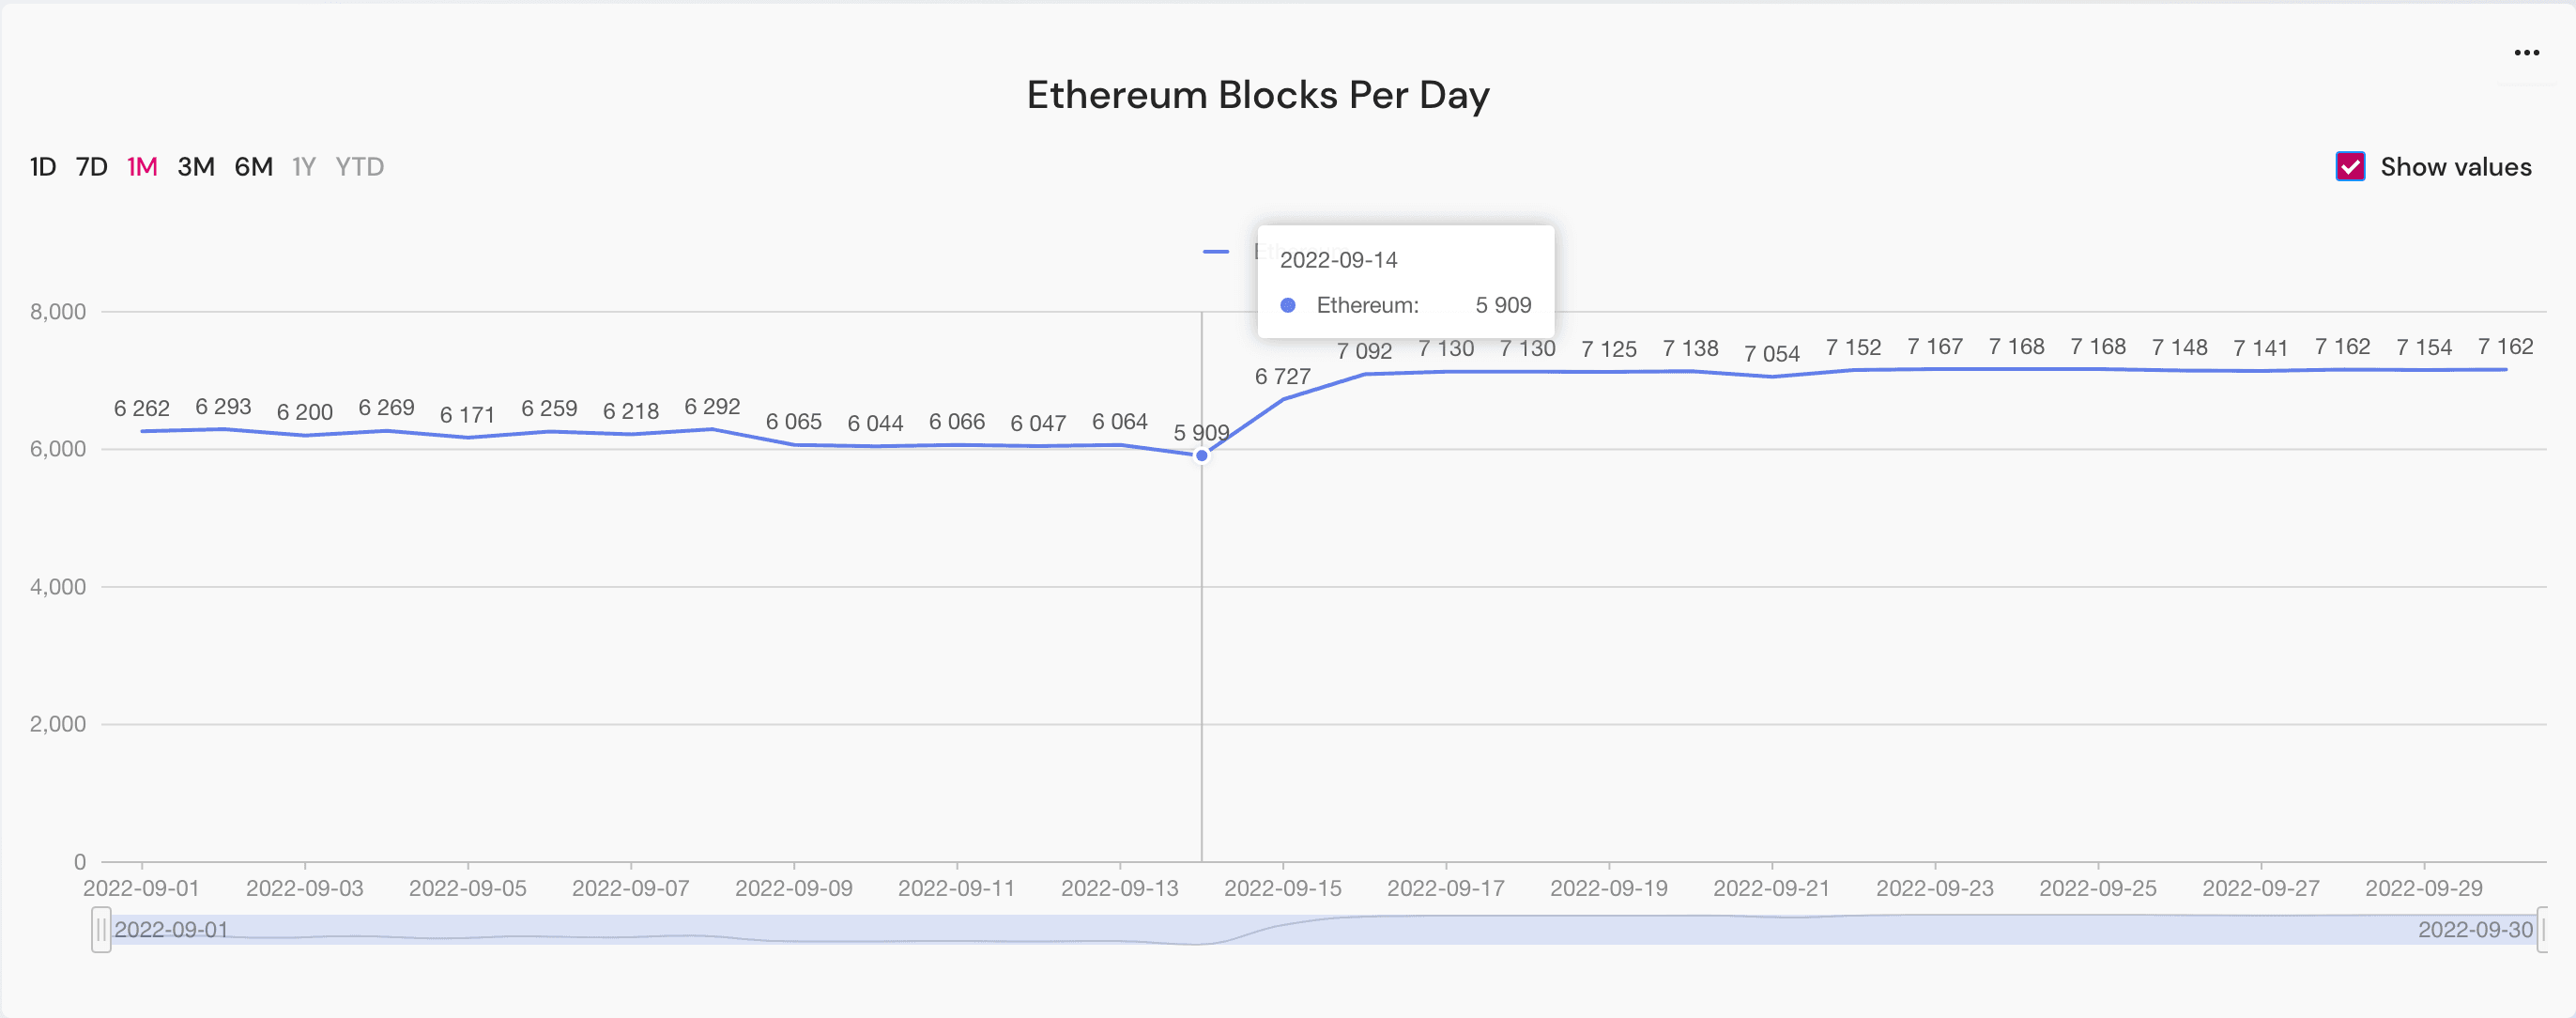 ethereum blocks per day in September 2022